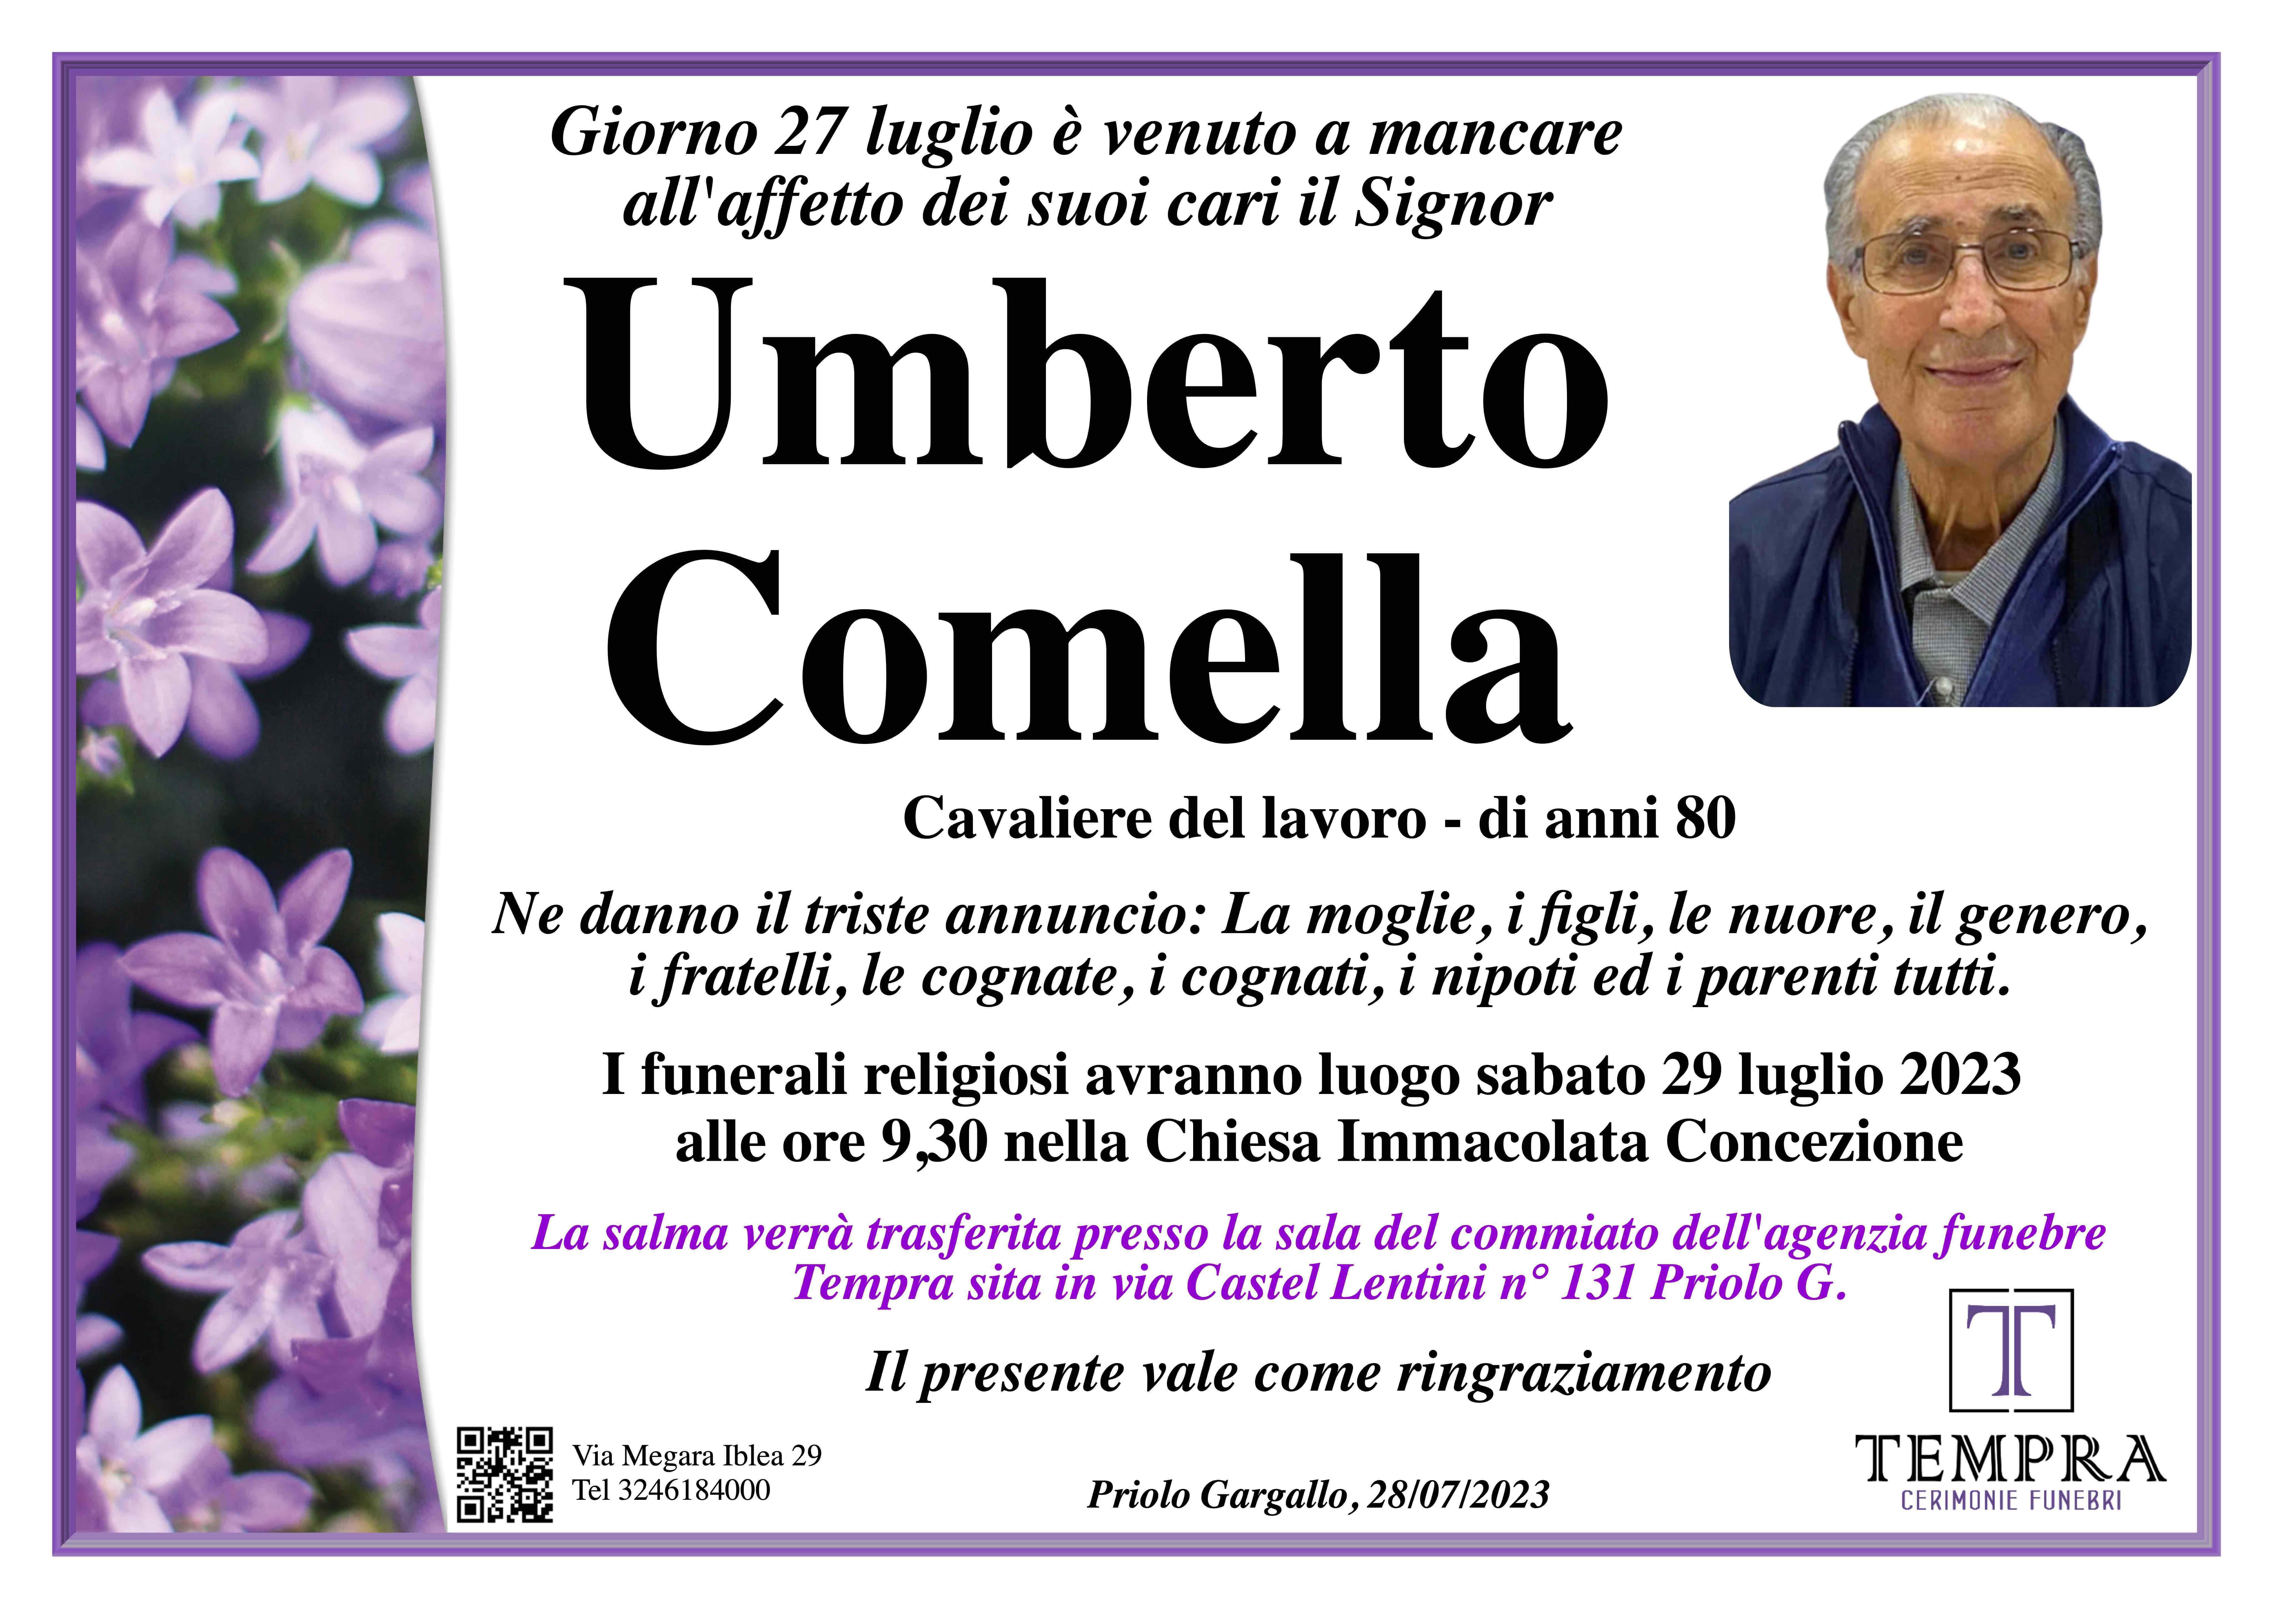 Umberto Comella